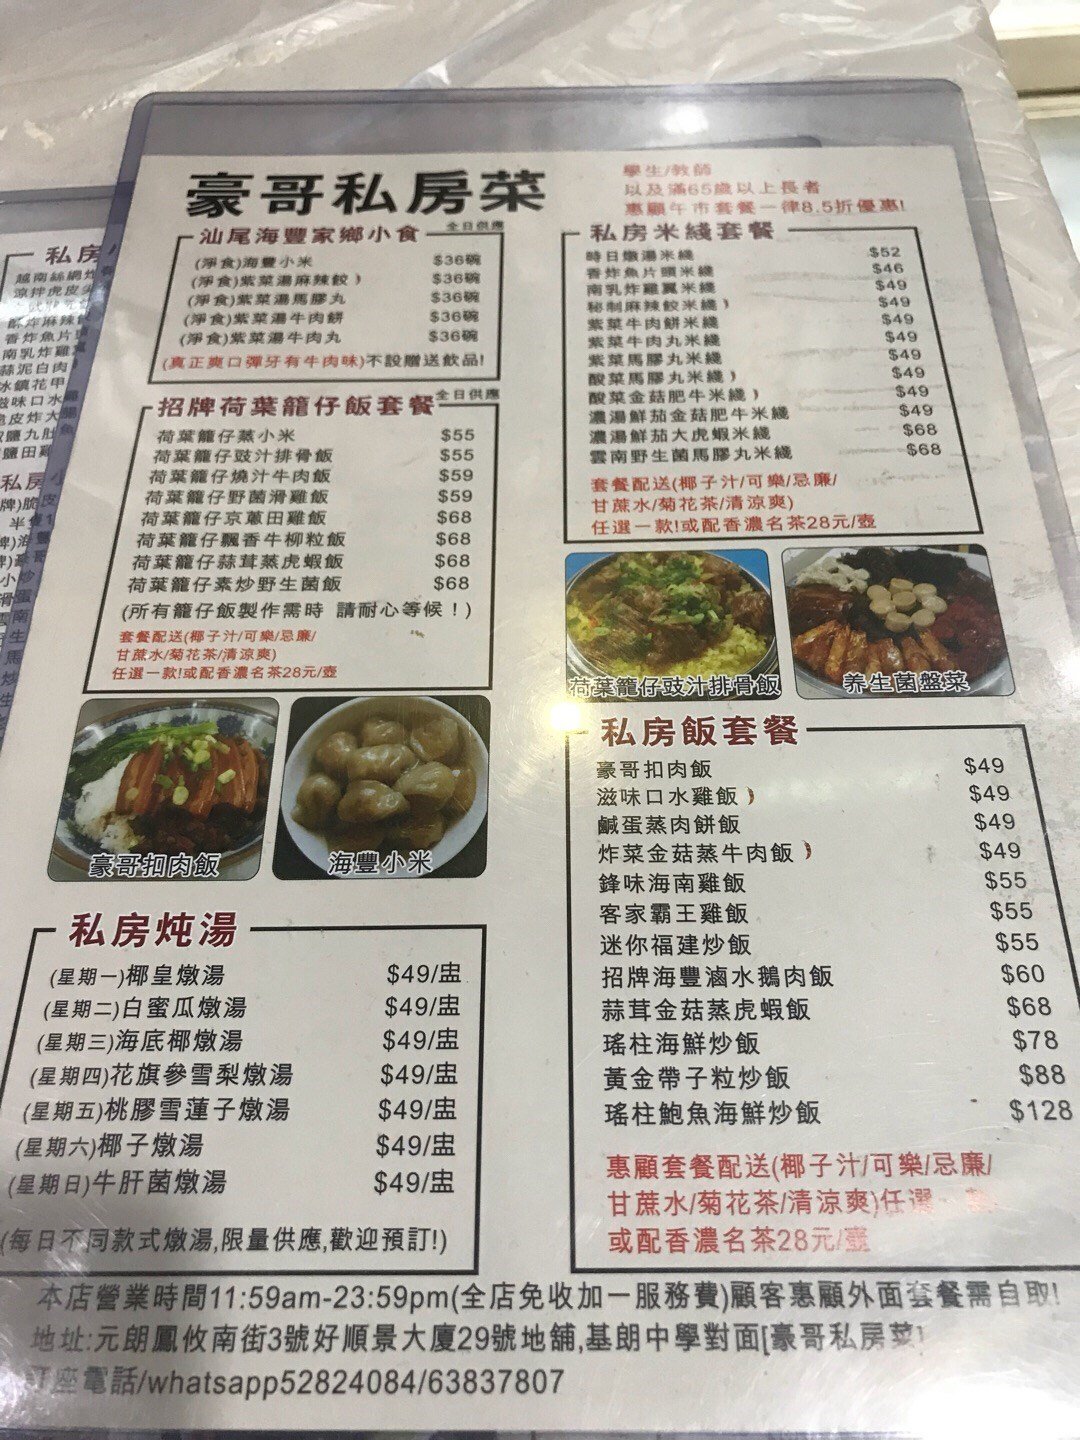 豪哥私房菜的食记– 香港元朗的粤菜 (广东)火锅中菜馆 